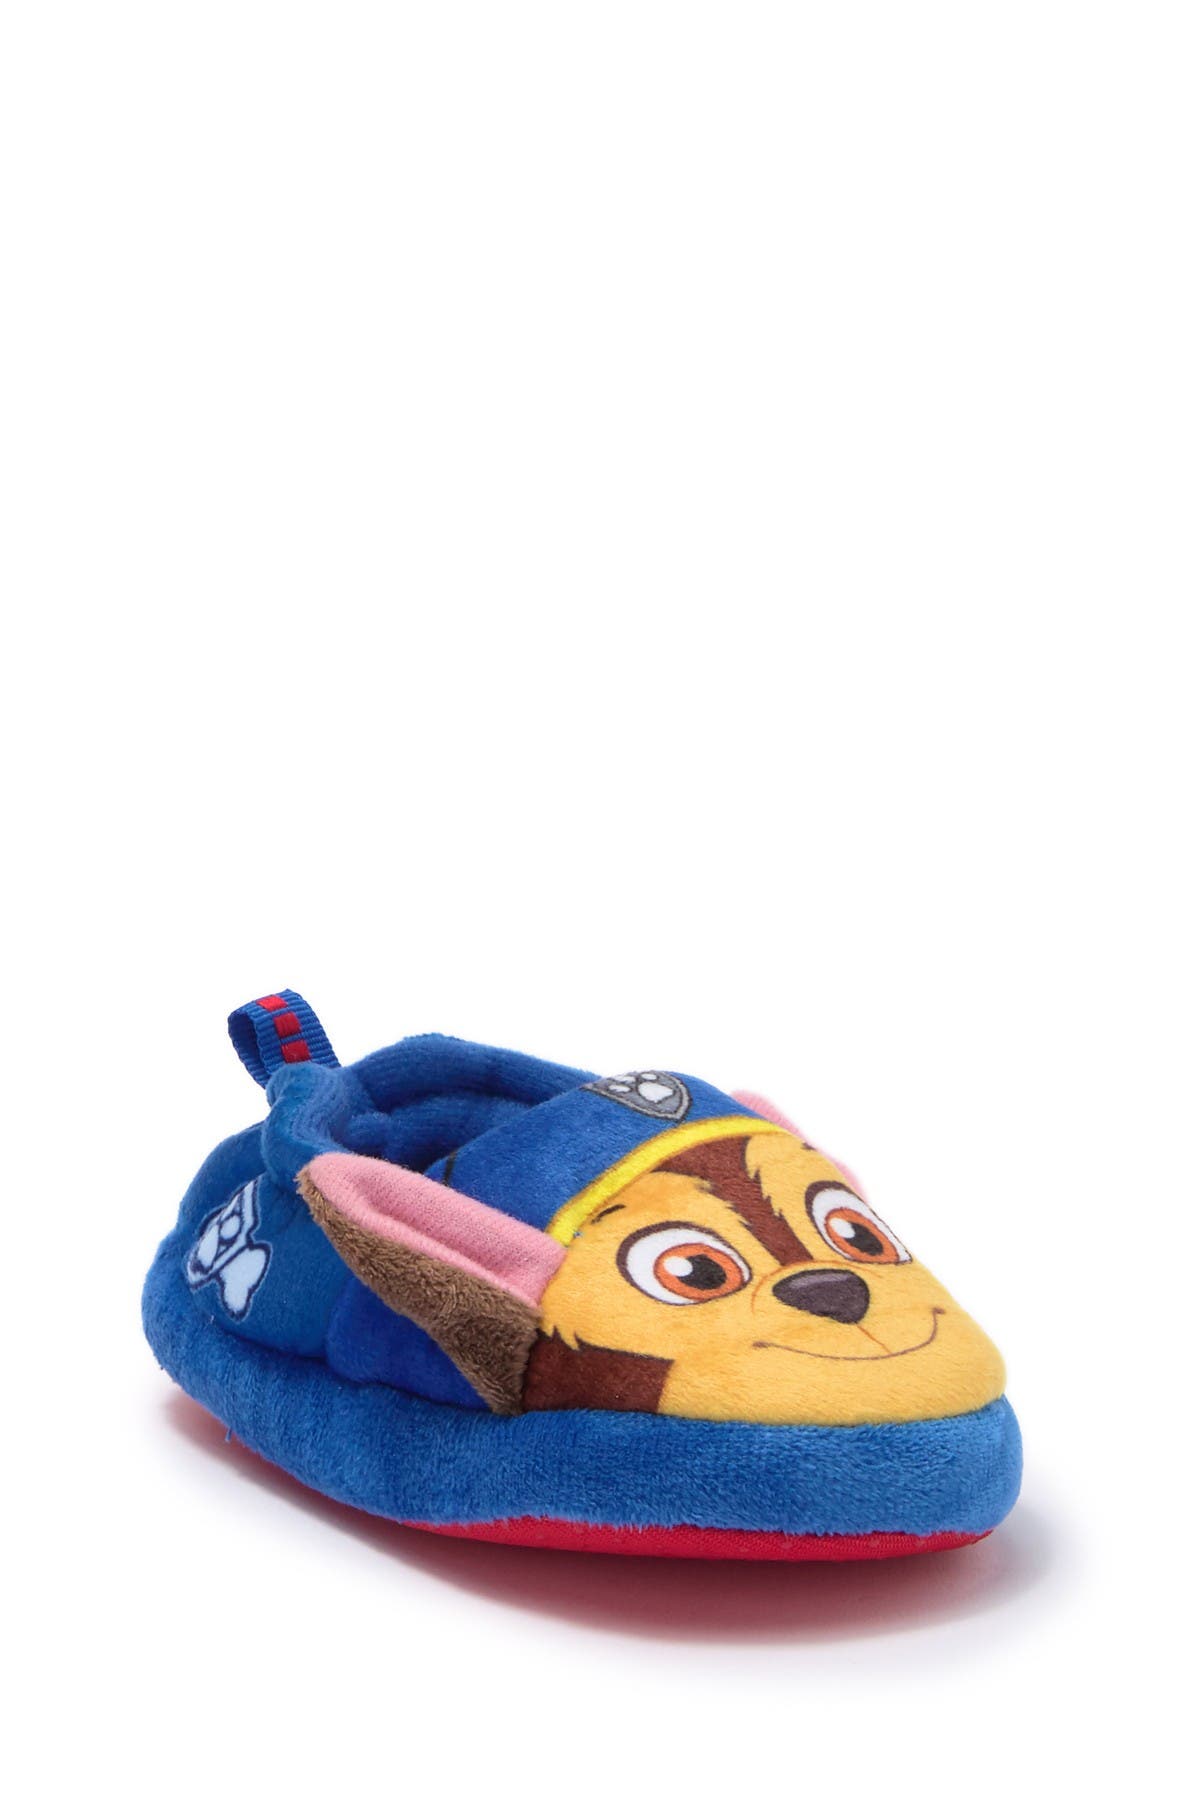 nordstrom toddler slippers